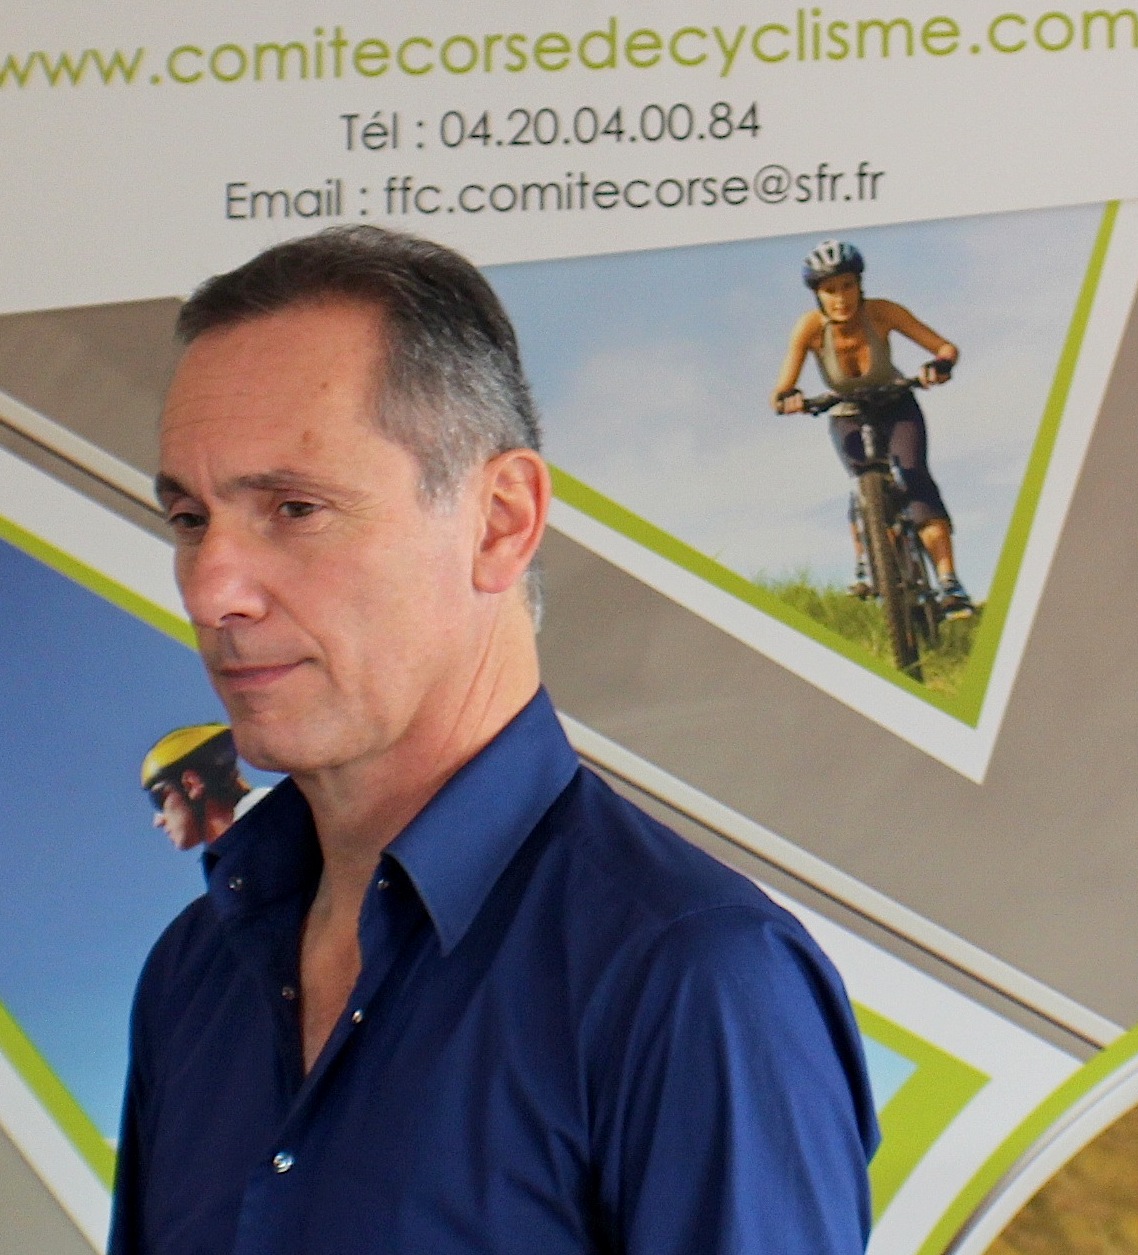 Paul-Antoine Lanfranchi : "Le comité corse de cyclisme est en état de mort clinique!"